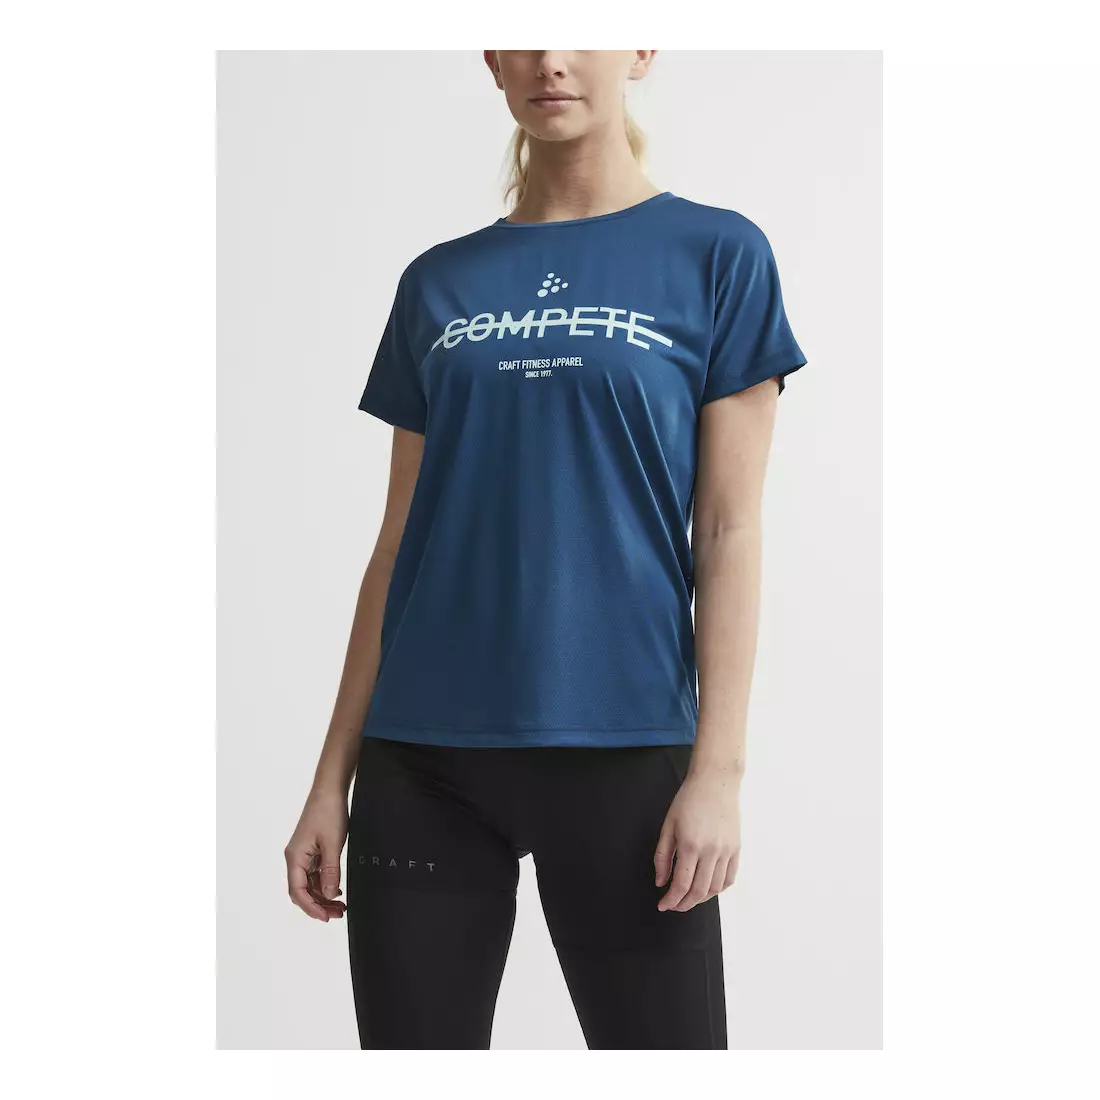 CRAFT EAZE MESH női sport / futó póló kék 1907019-373000